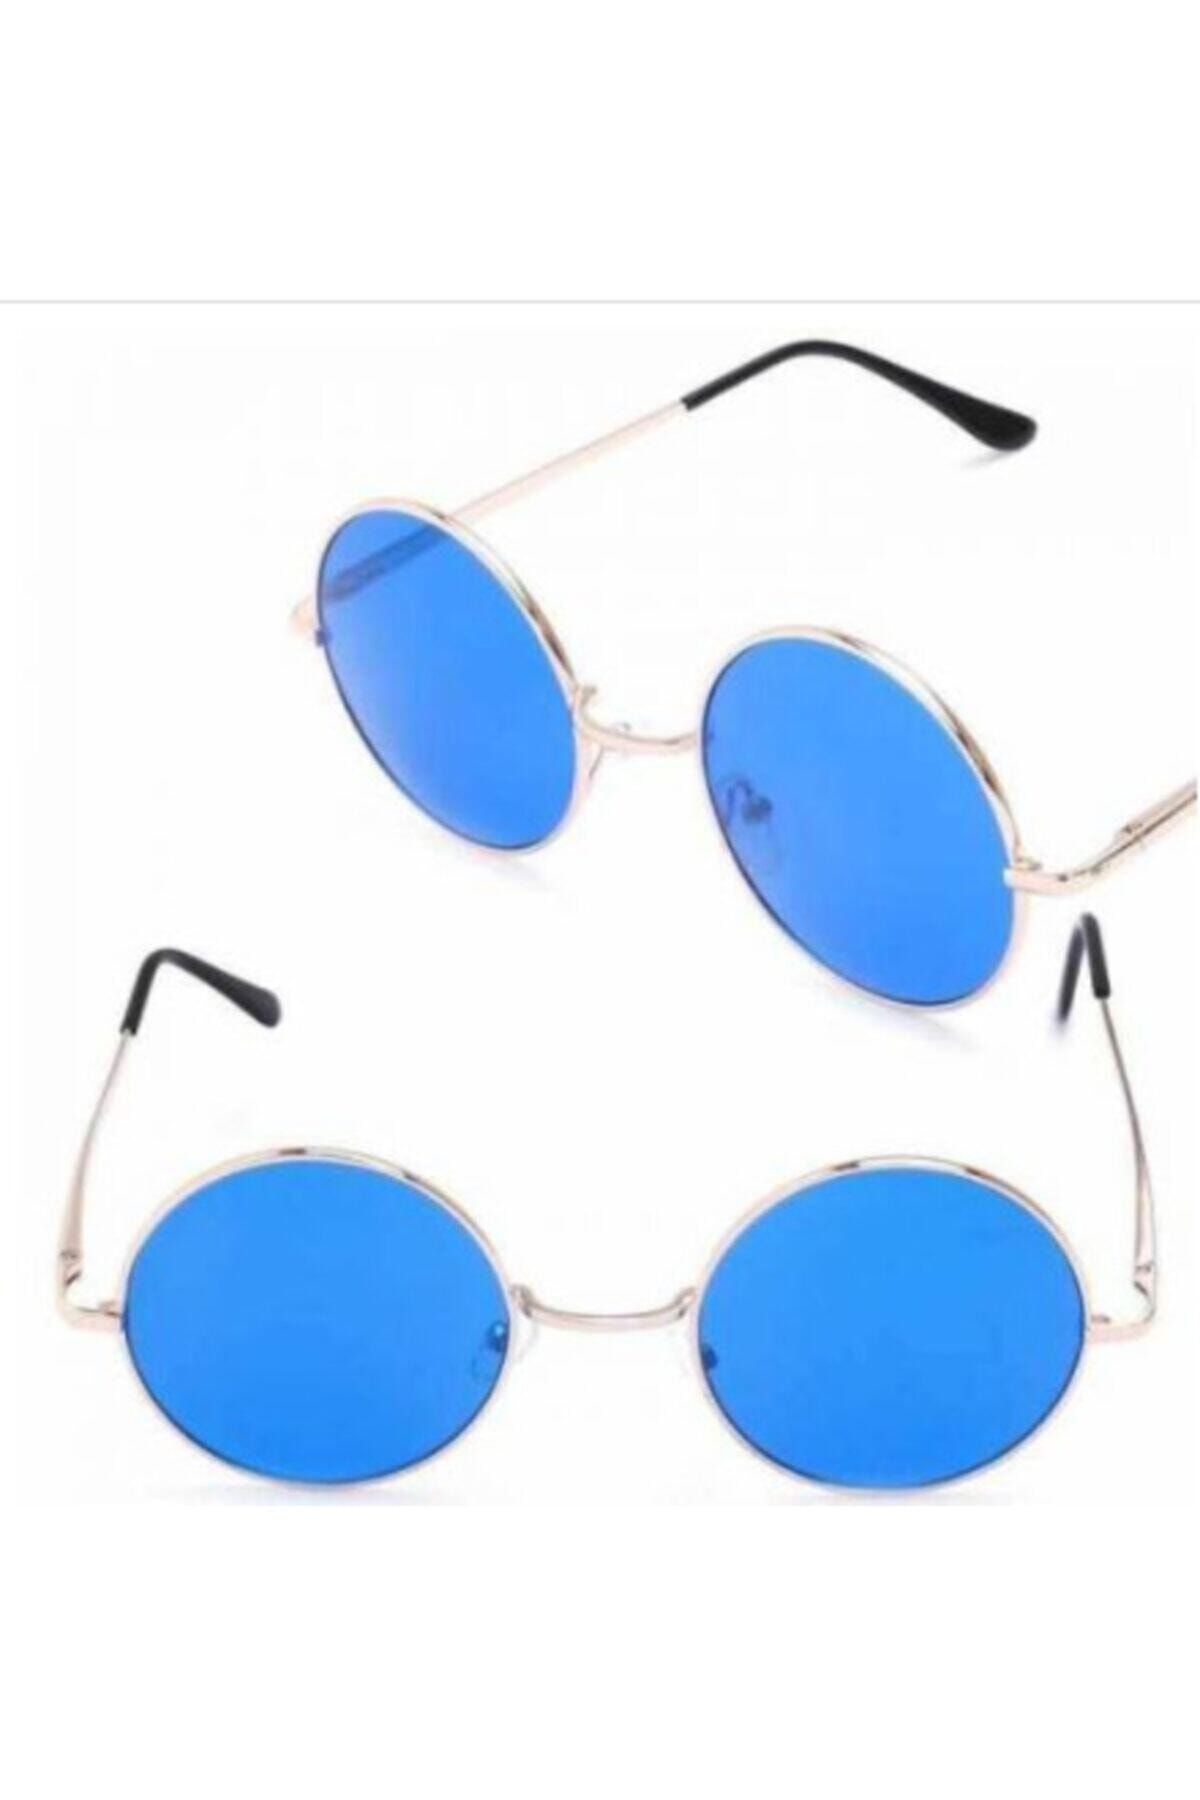 Genel Markalar John Lennon Model Güneş Gözlüğü Yuvarlak Mavi Camlı